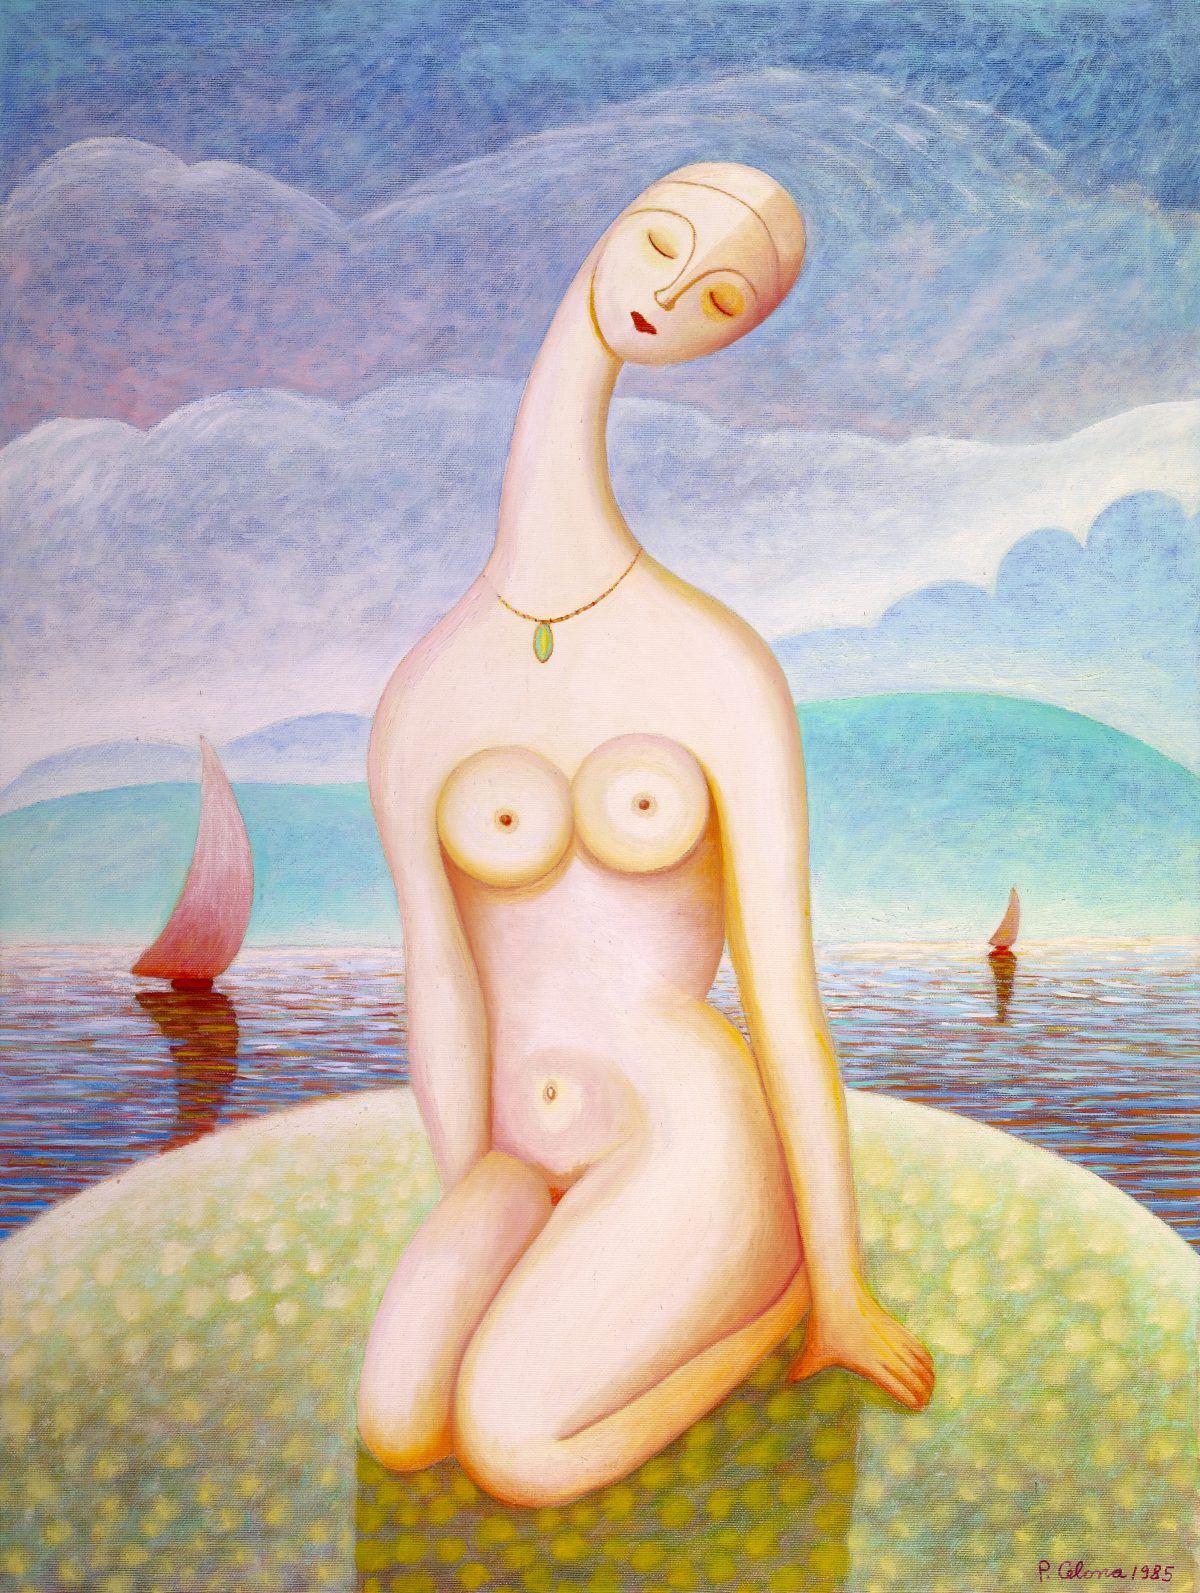 Figura sulla spiagia, 1985
Olio su tela, 80 x 60 cm,
Collezione privata,
FV037